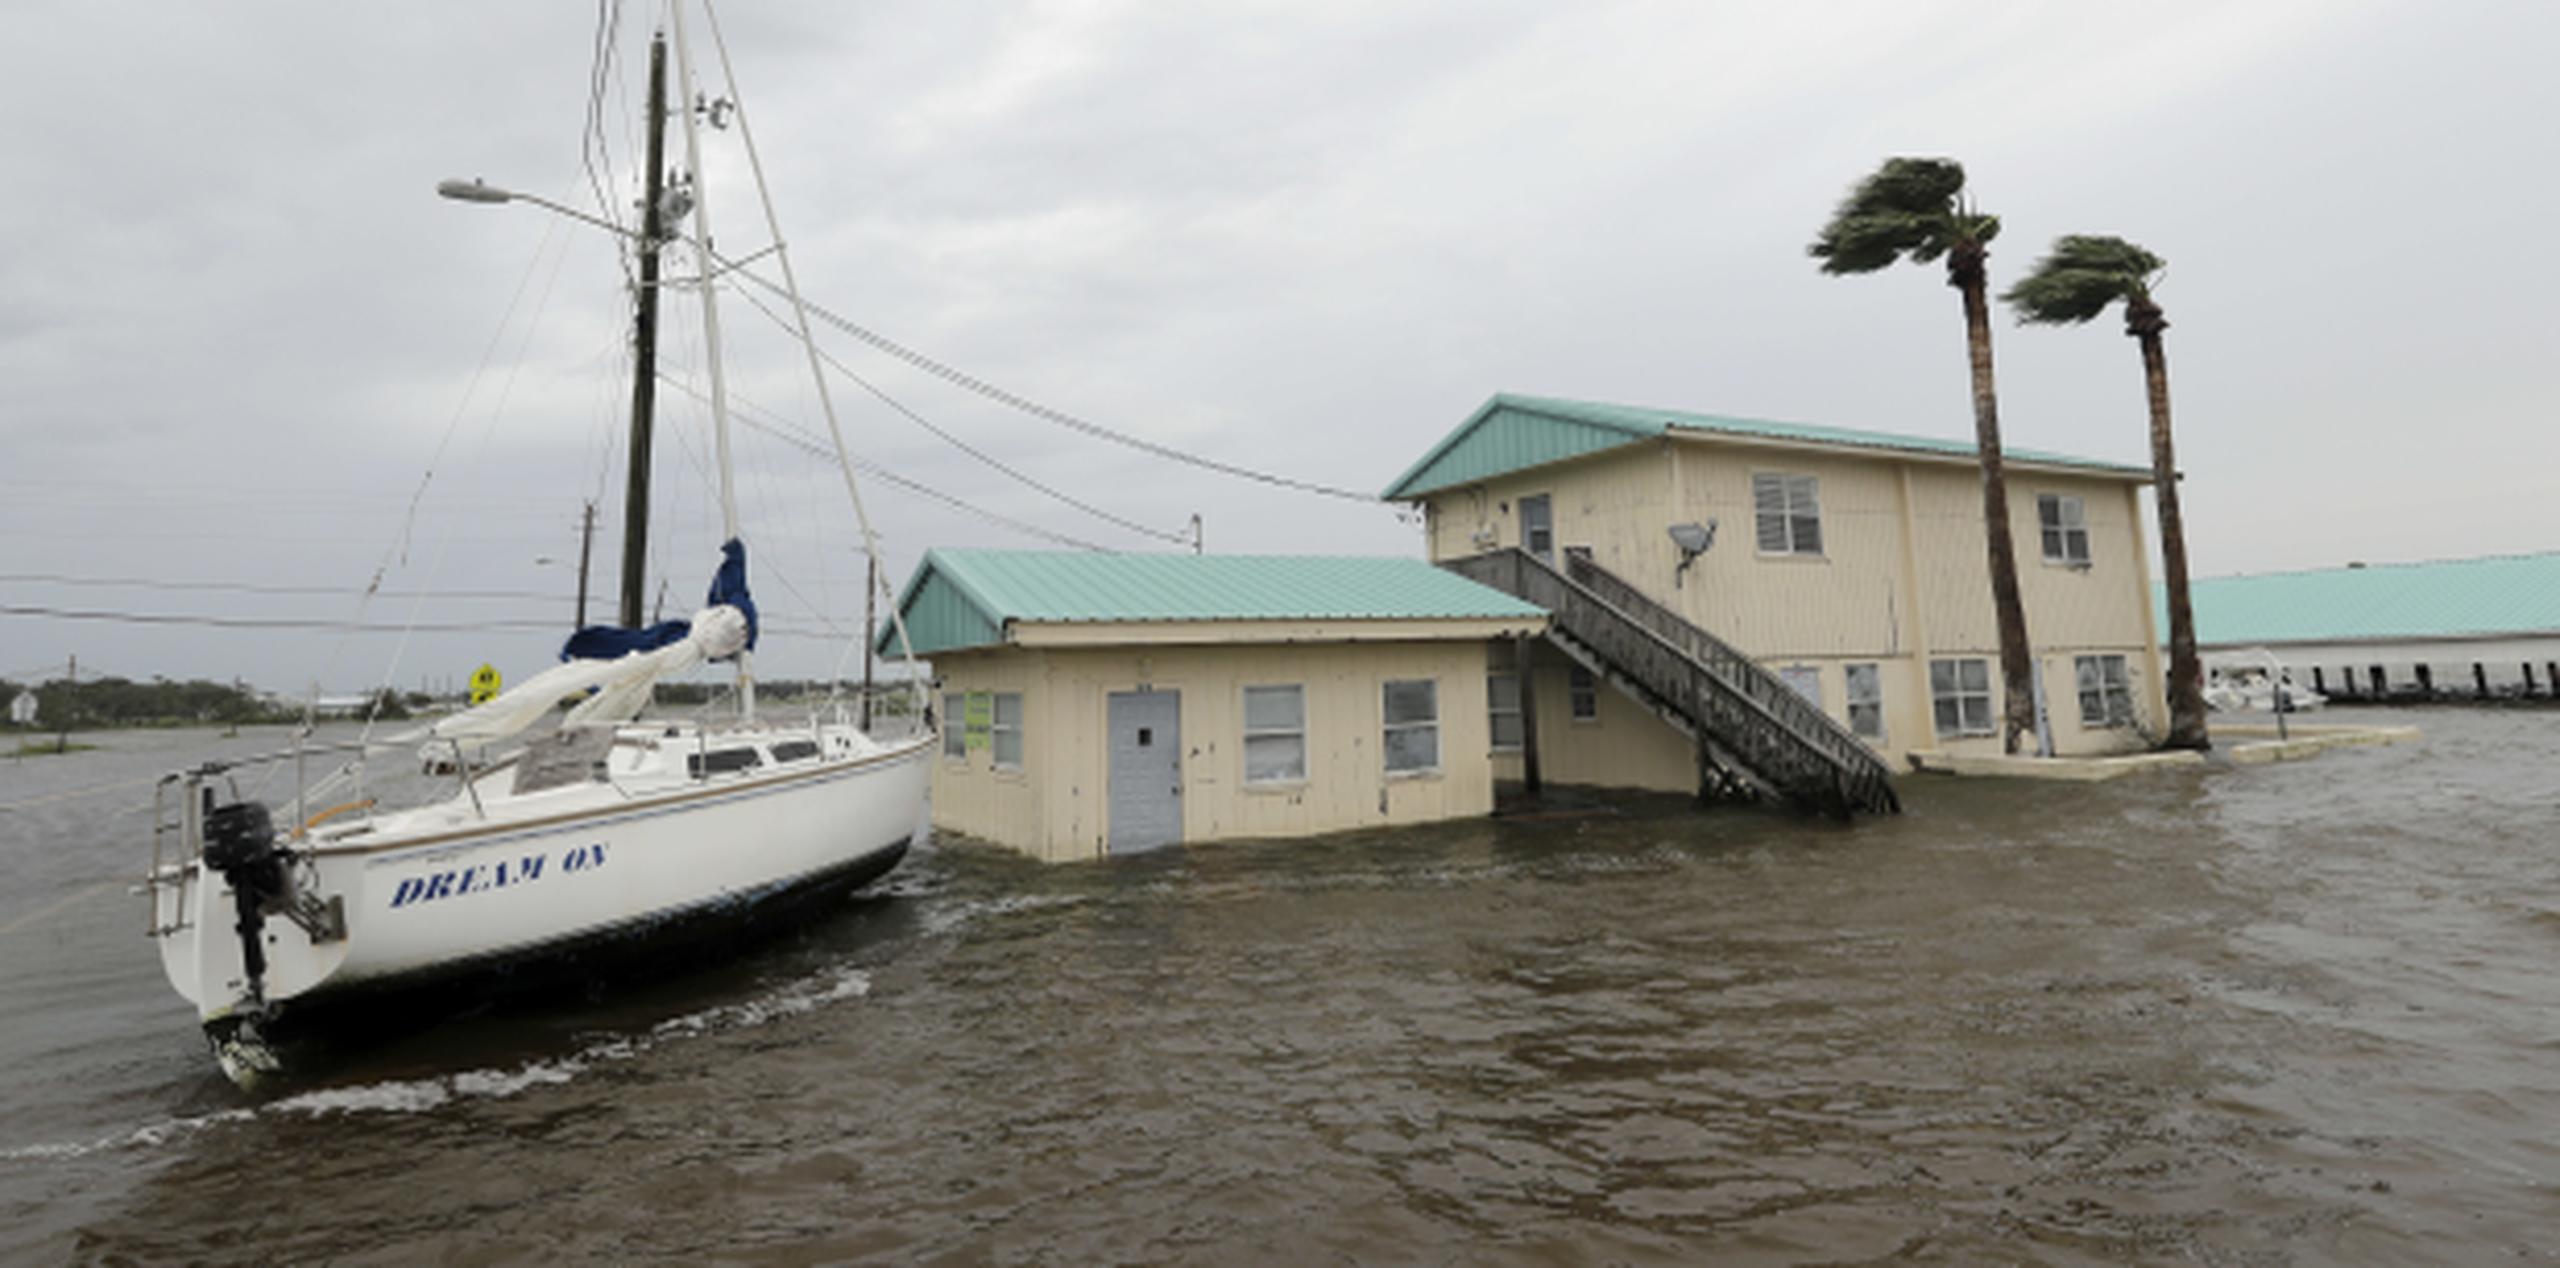 Los huracanes casi siempre pierden fuerza rápidamente después de tocar tierra y alejarse de las aguas cálidas que alimentan sus vientos. (AP / David J. Phillip)